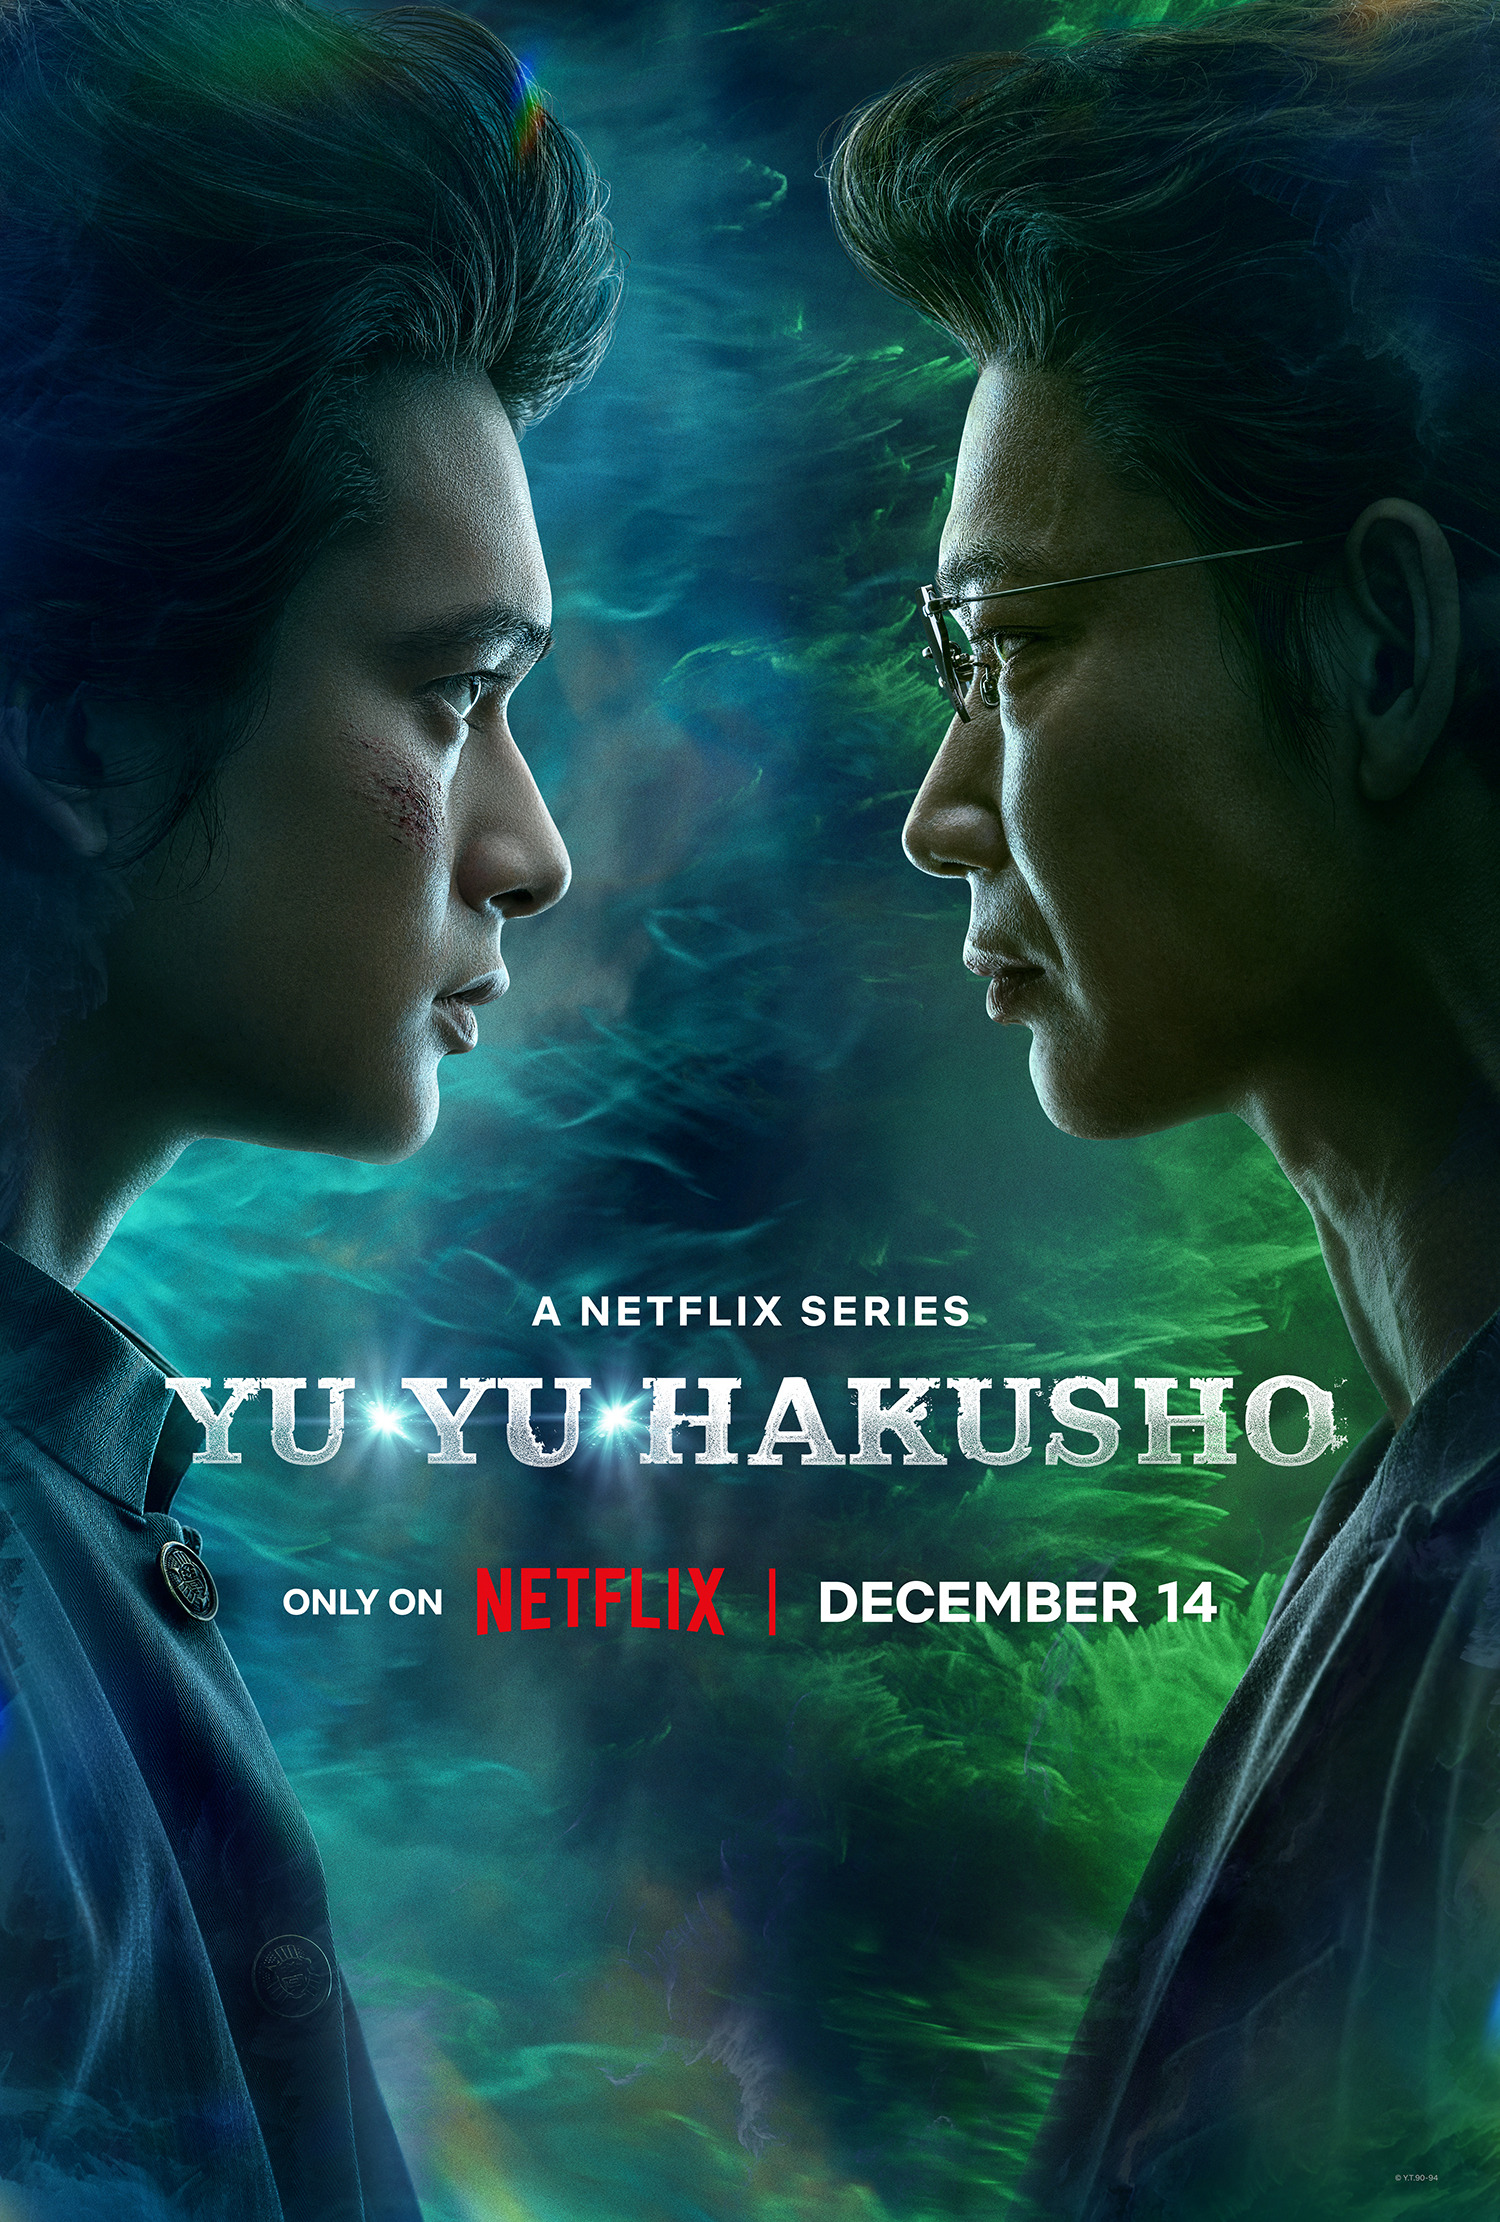 Mega Sized TV Poster Image for Yu yu hakusho (#11 of 20)